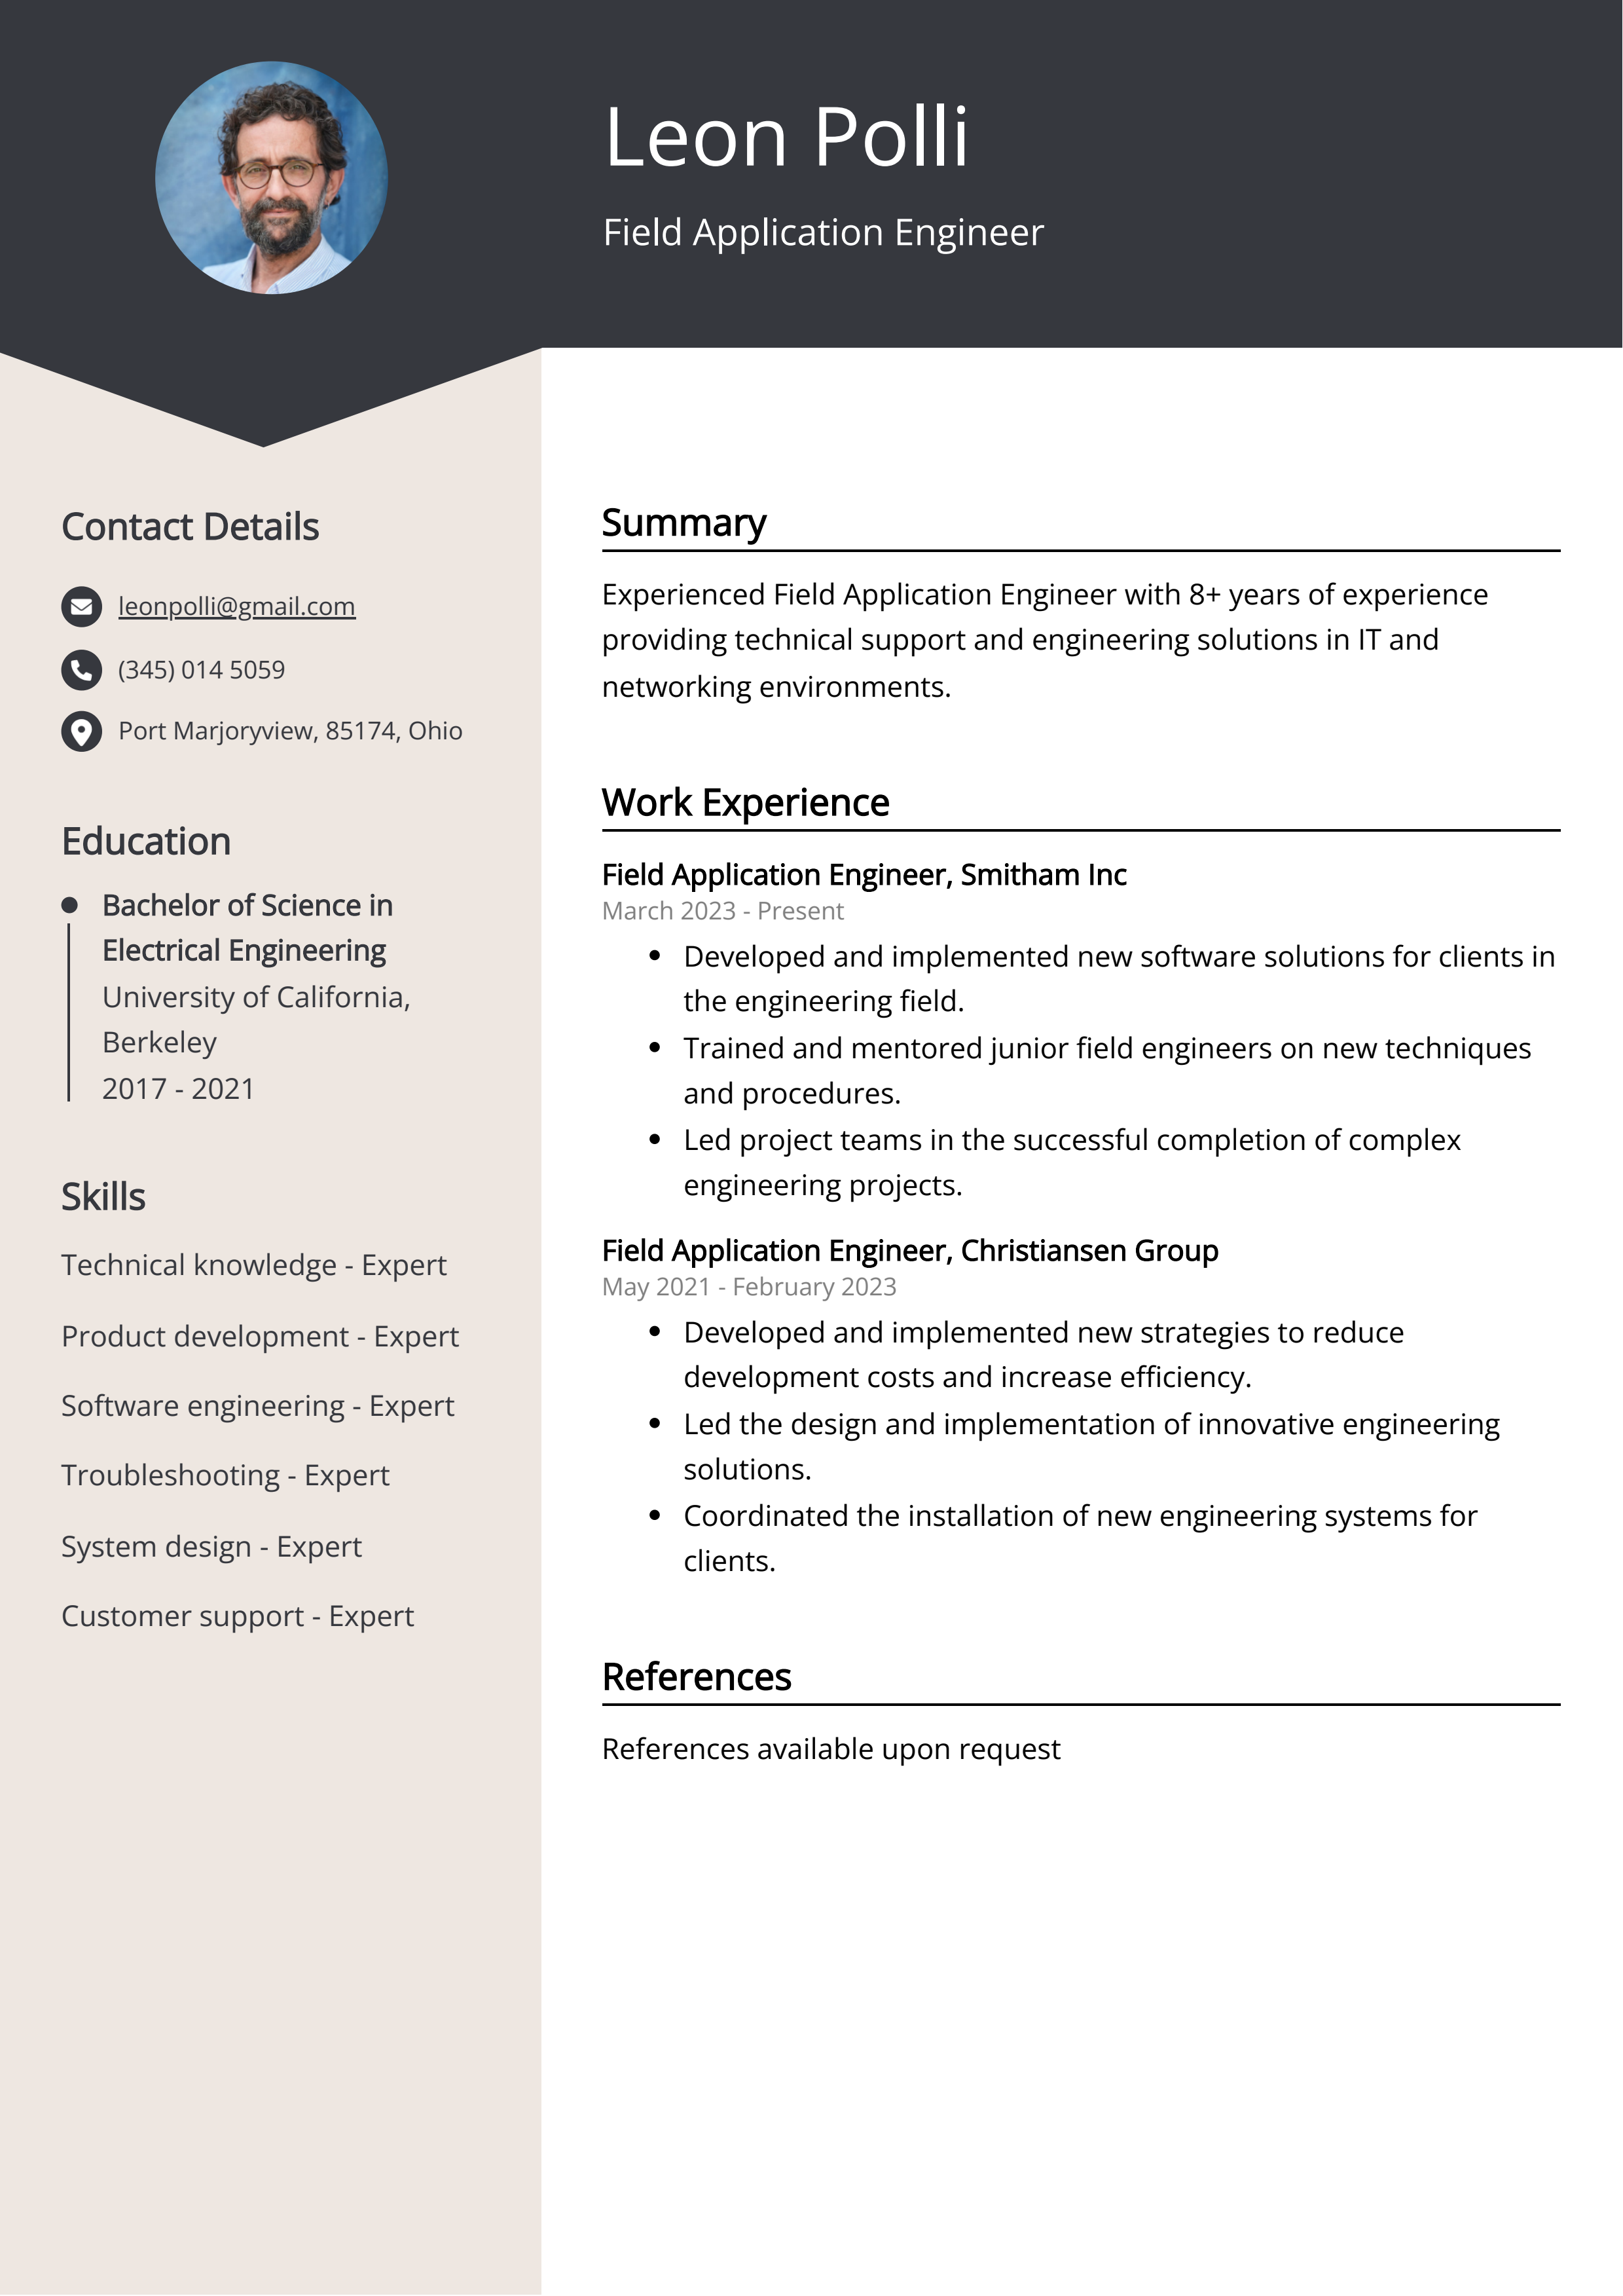 Field Application Engineer CV Example